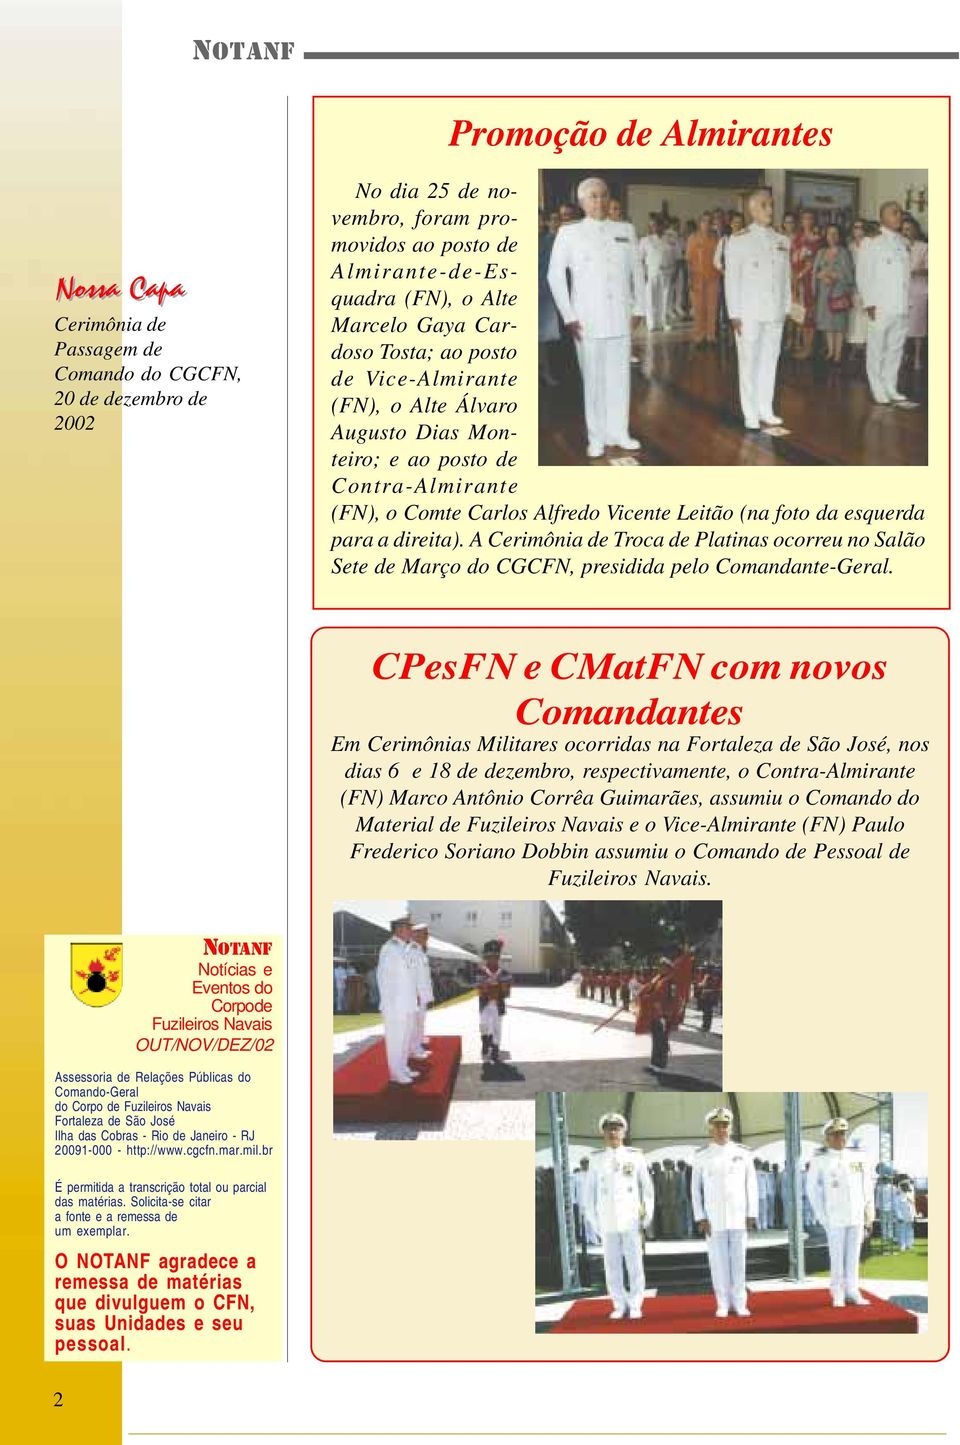 A Cerimônia de Troca de Platinas ocorreu no Salão Sete de Março do CGCFN, presidida pelo Comandante-Geral.